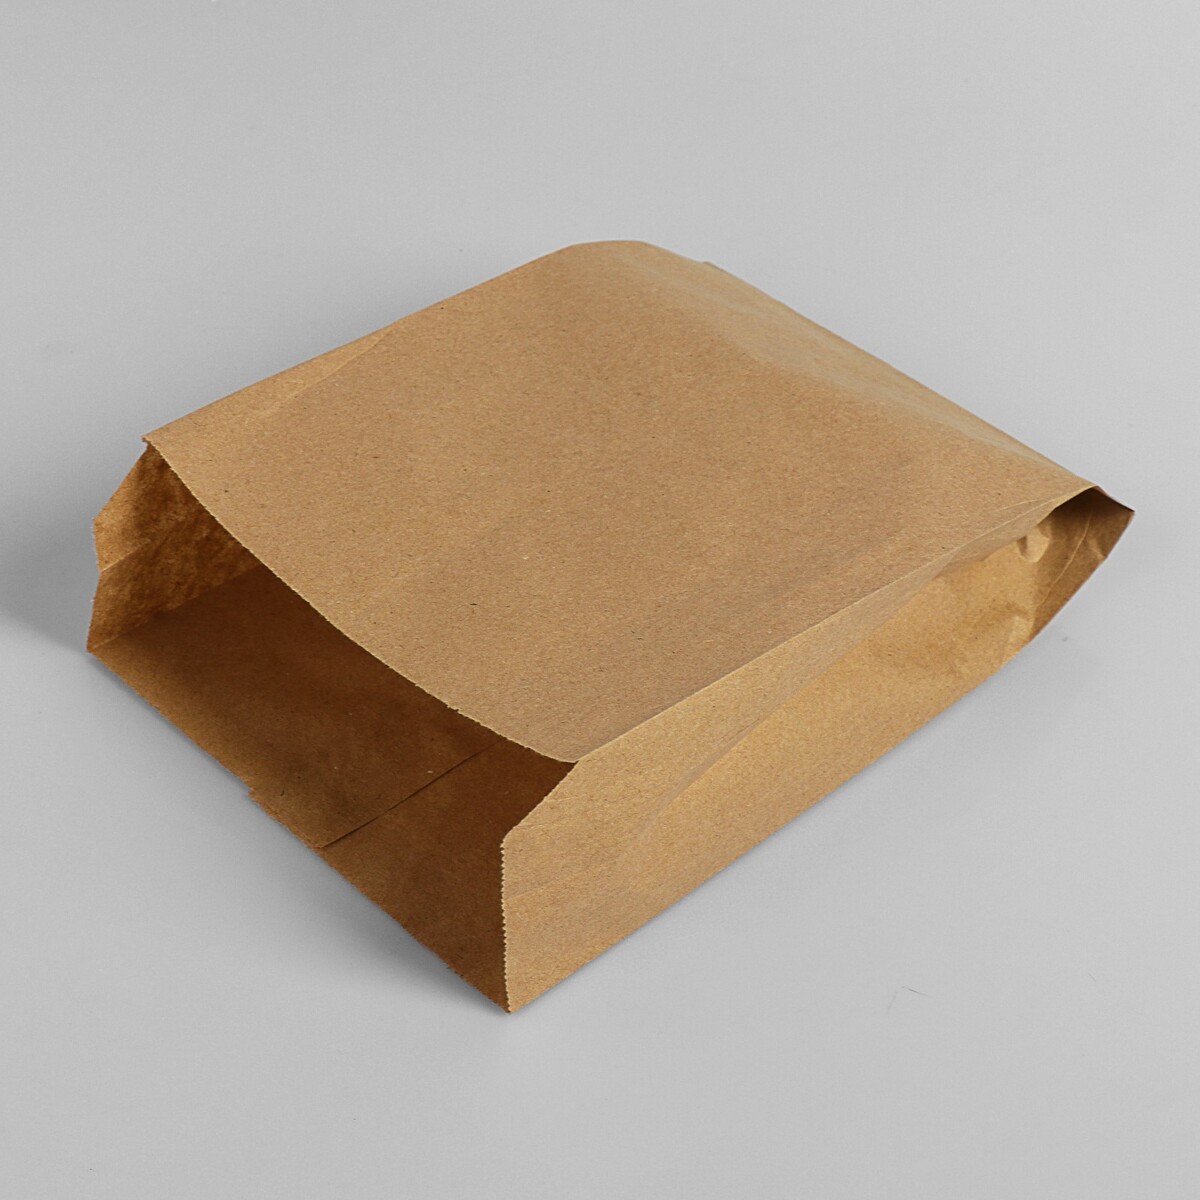 Пакет бумажный фасовочный, крафт, v-образное дно 25 х 17 х 7 см, набор 100 шт набор коробок 3 в 1 обратный конус крафт без крышек с ручкой 11 14 х 14 16 х 18 21